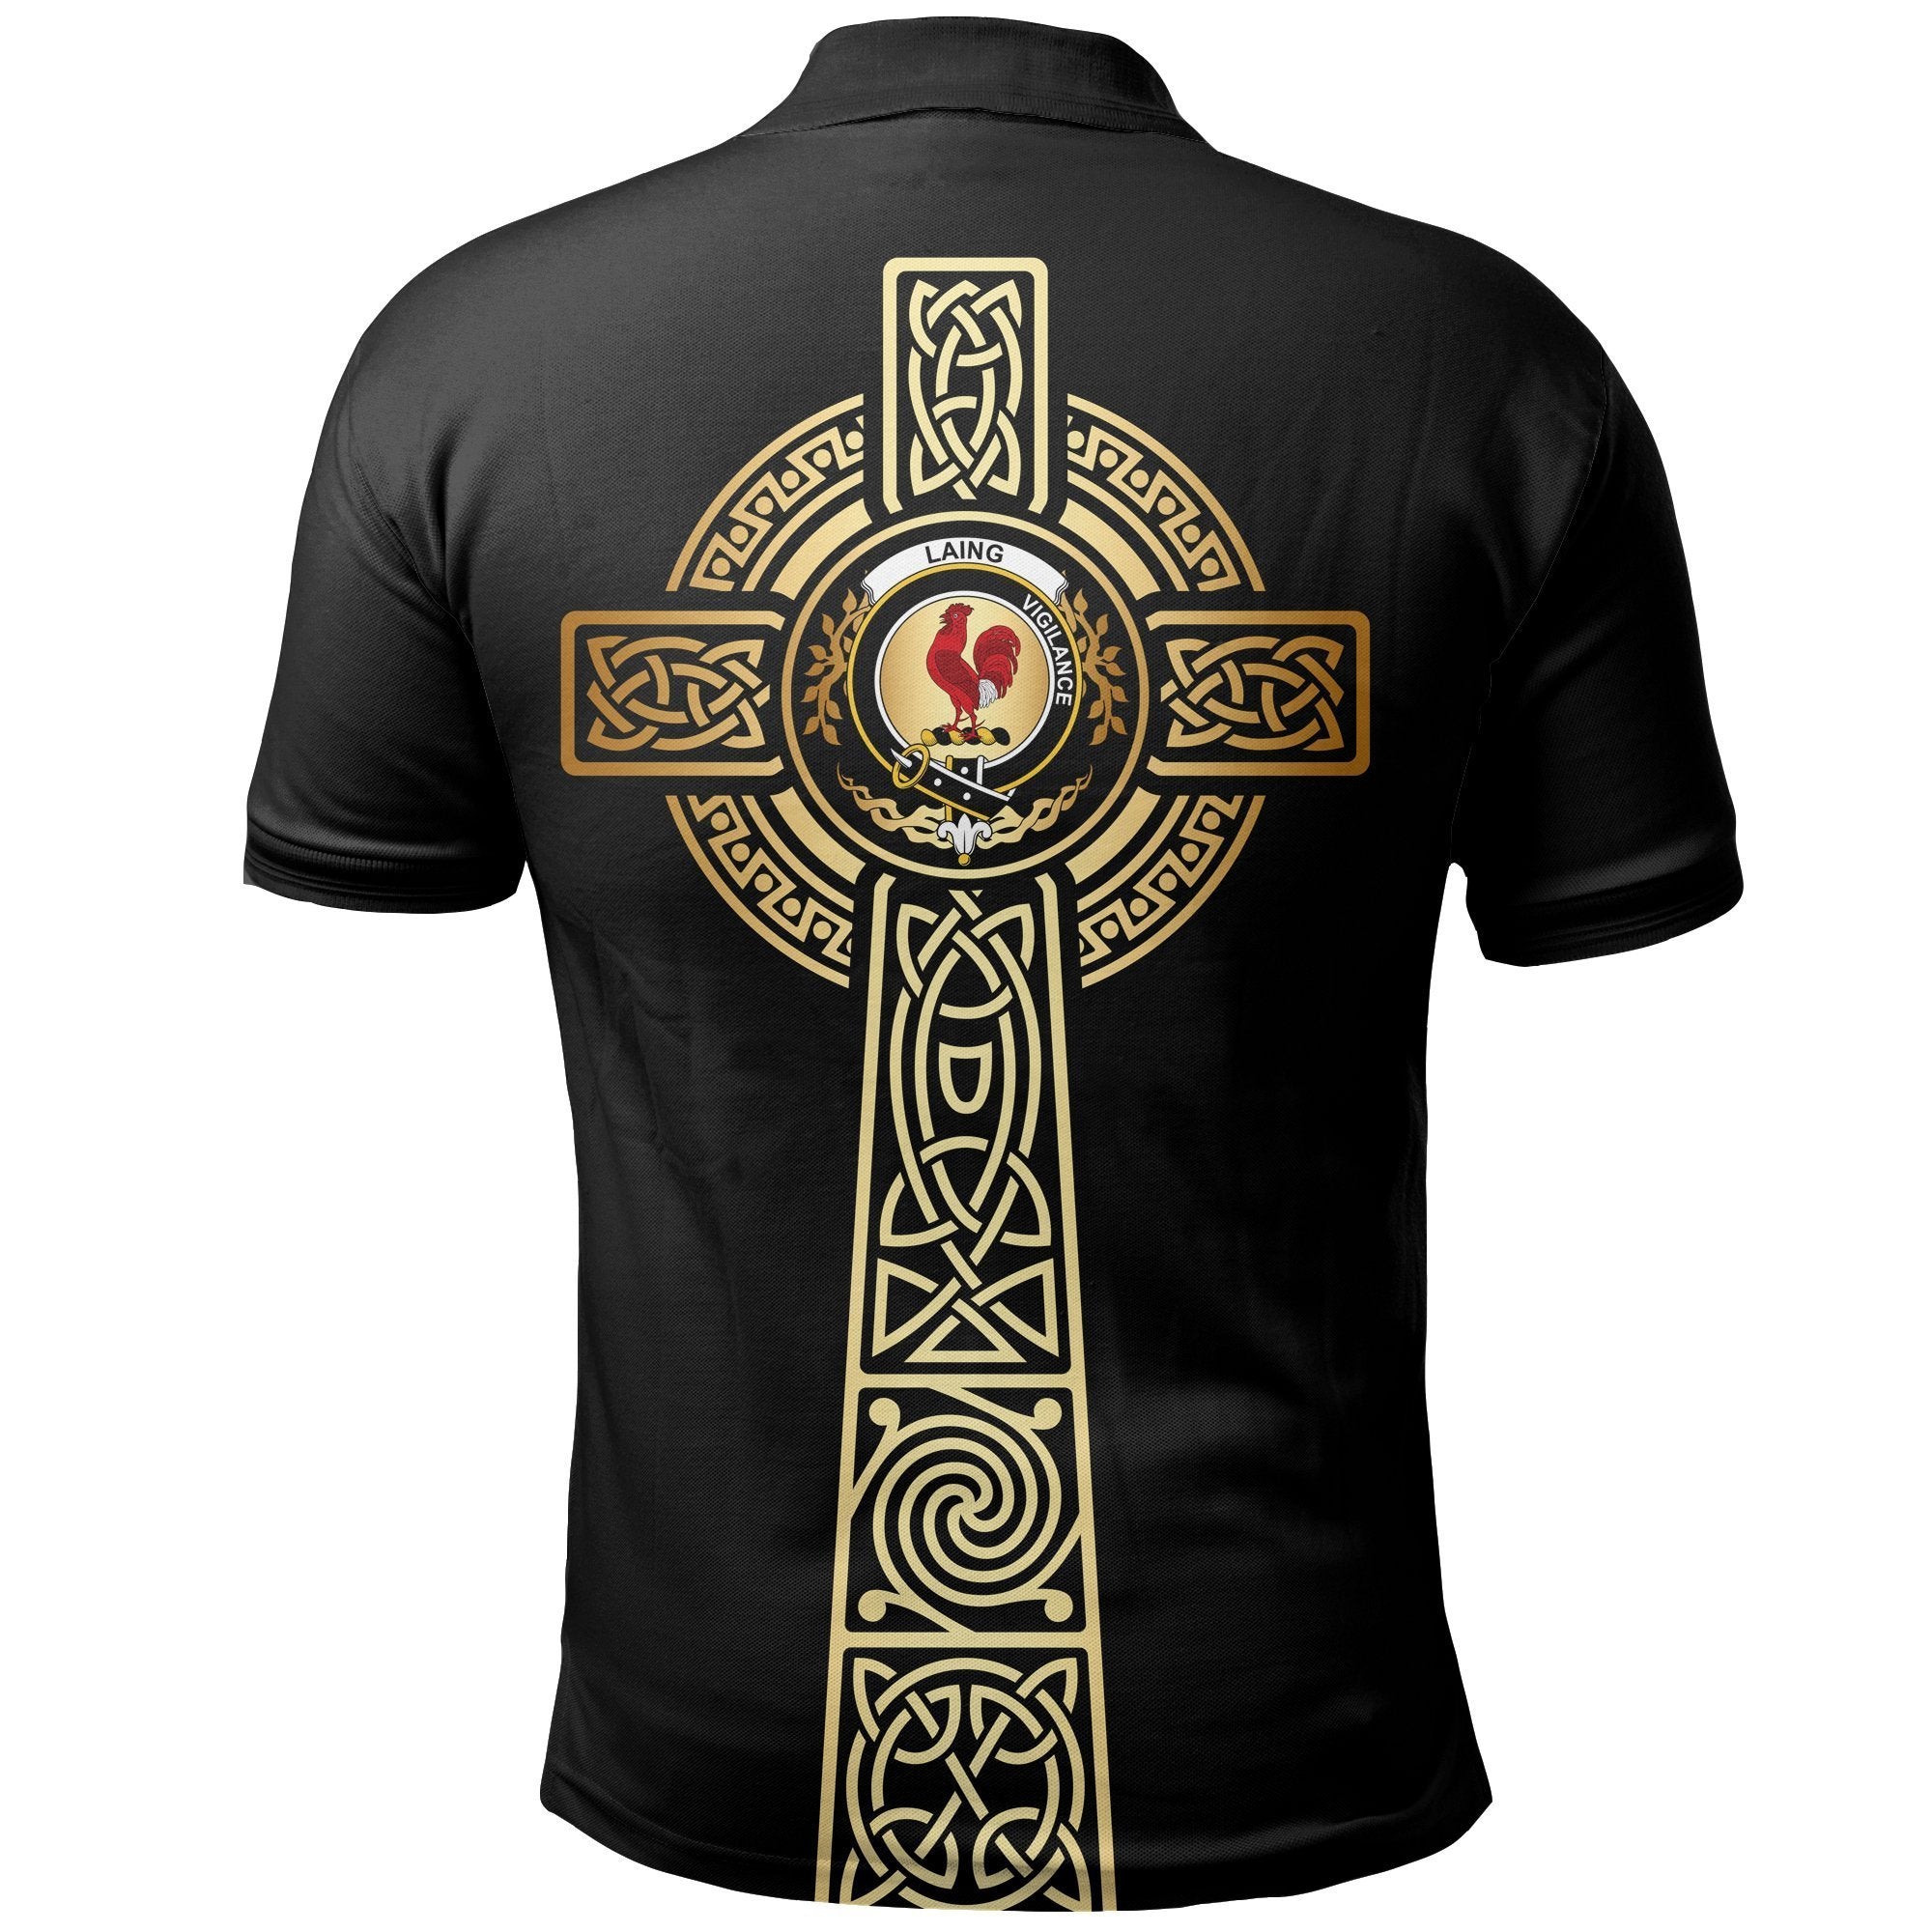 Laing Clan Unisex Polo Shirt - Celtic Tree Of Life